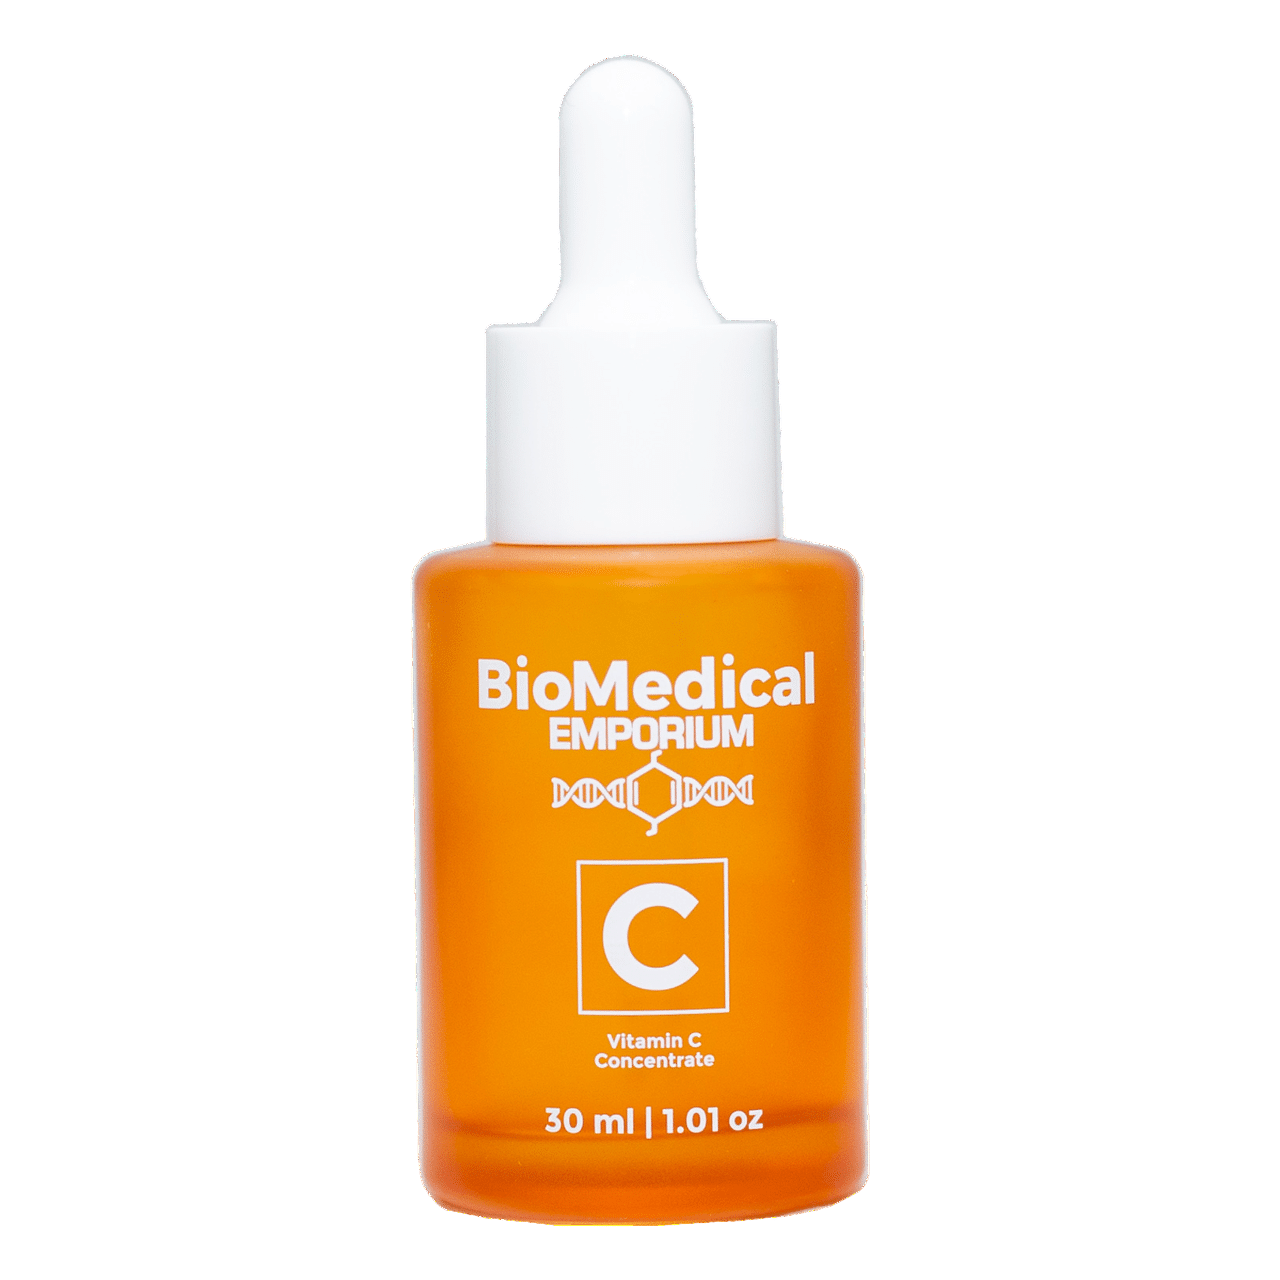 Biomedical Emporium - Vitamin C Concentrate 30ml